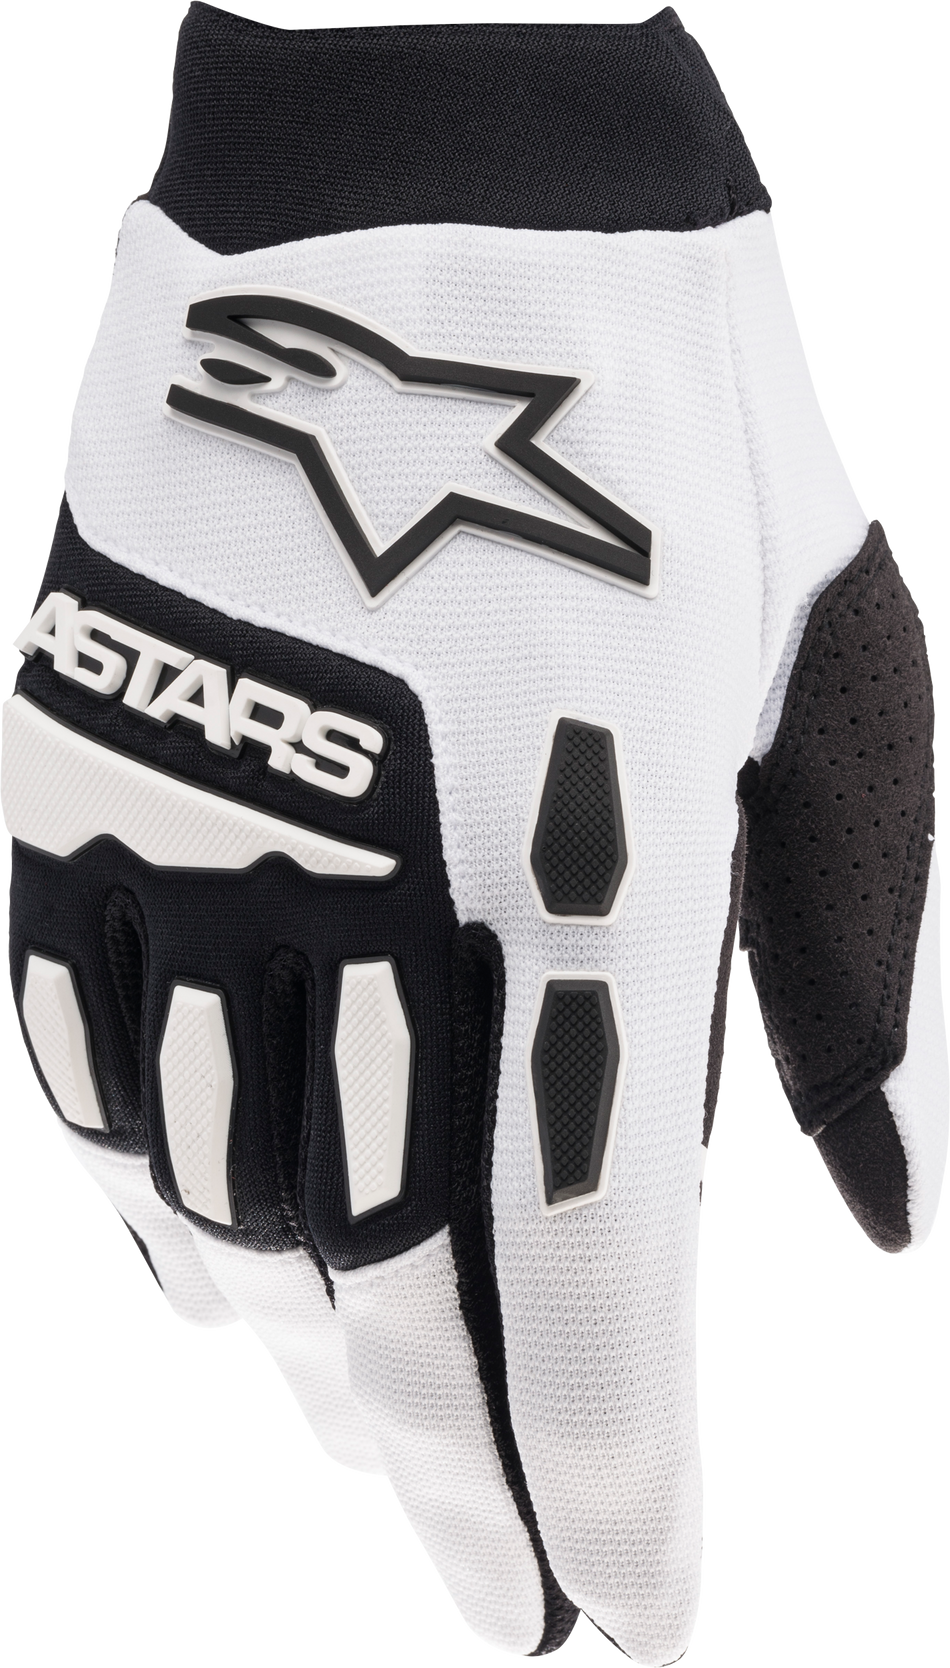 ALPINESTARS Full Bore Gloves White/Black Sm 3563622-21-S